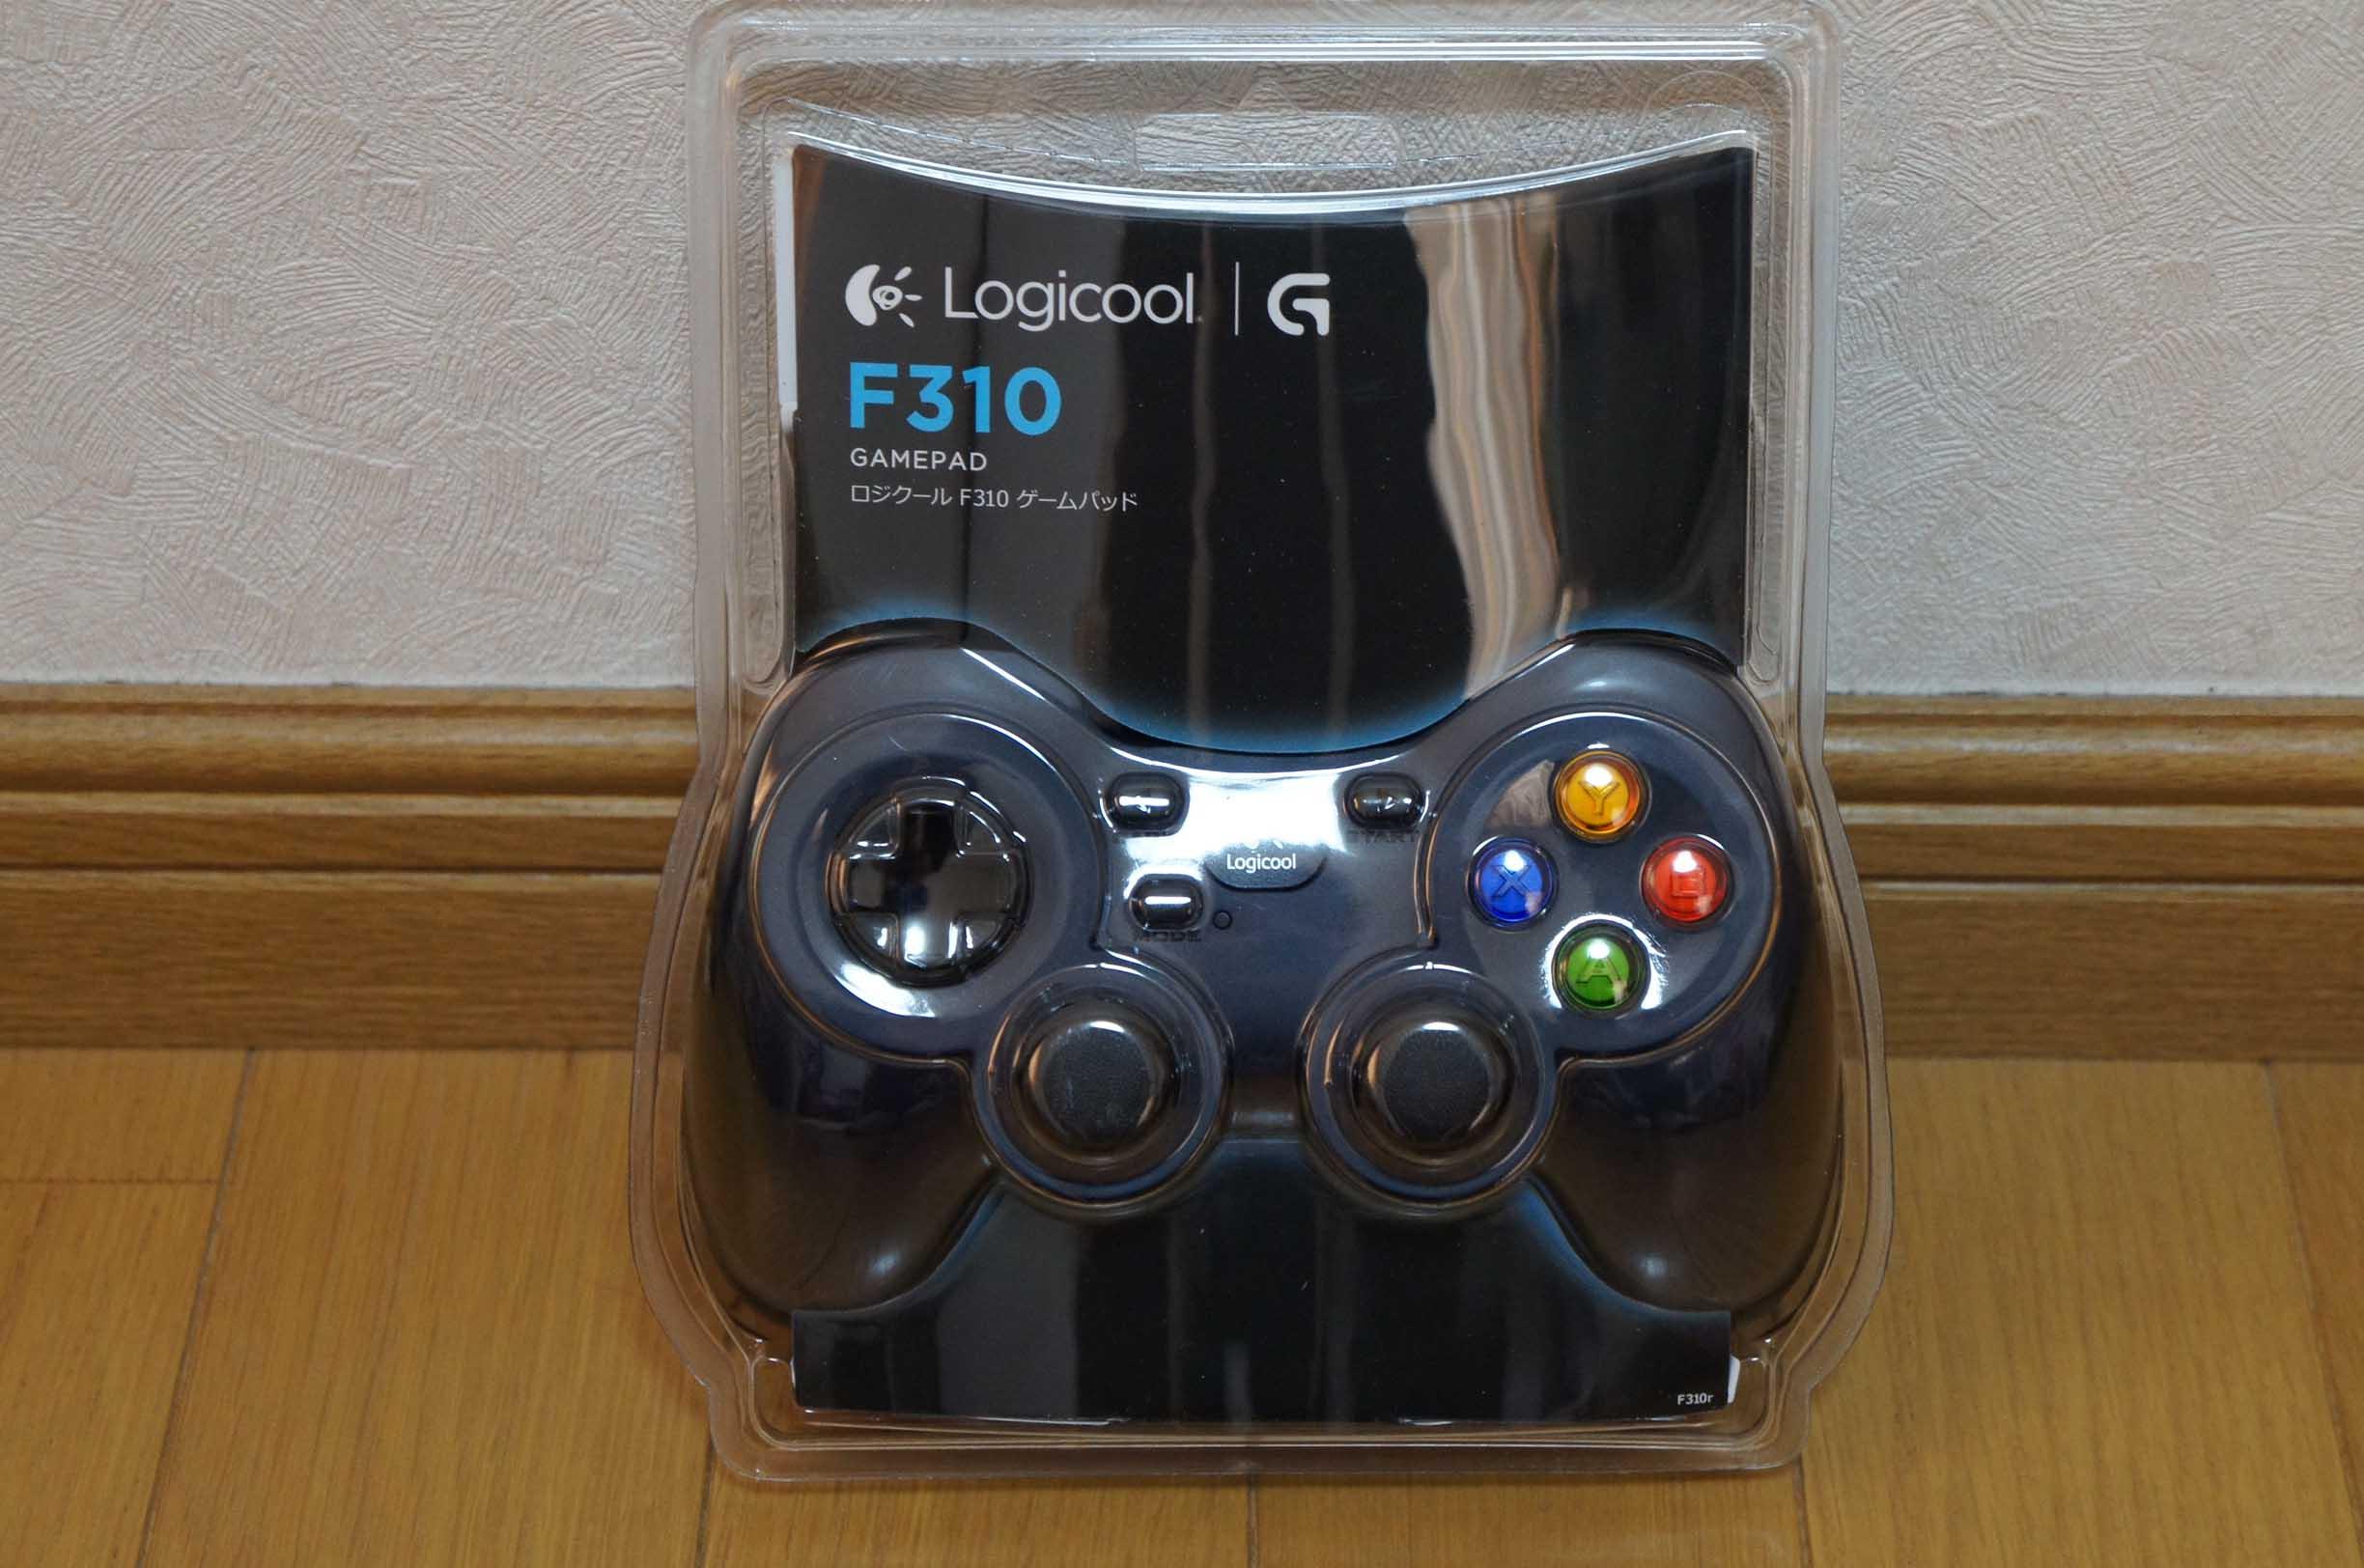 あのゲーム用に購入したものの Logicool ゲームパッド F310r Mhg2認証対応 のレビュー ジグソー レビューメディア